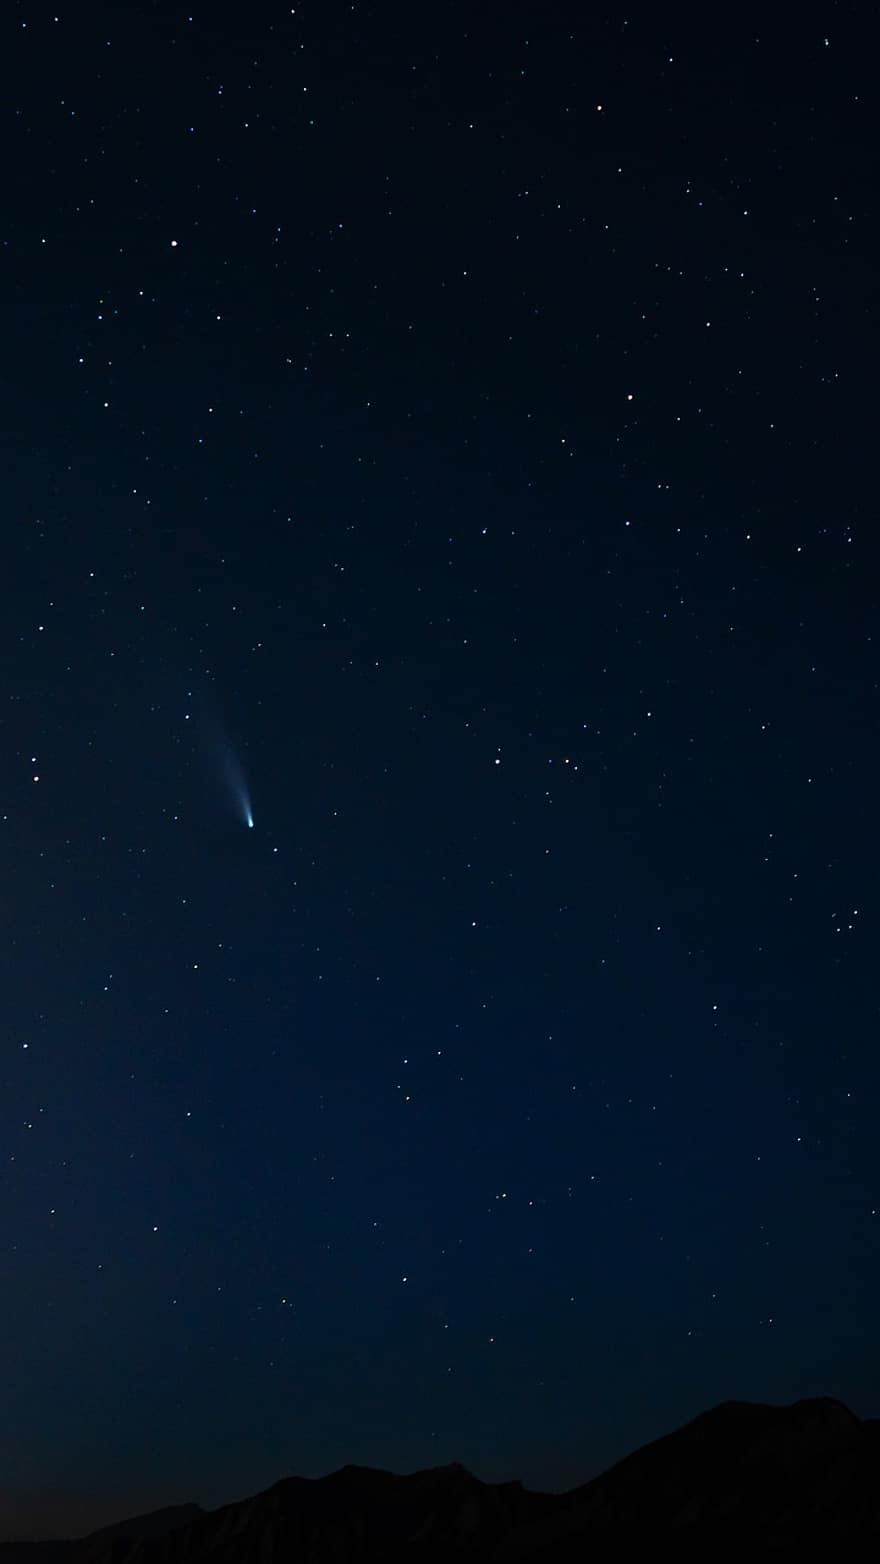 komeetta, taivas, yö-, tähdet, Neowise